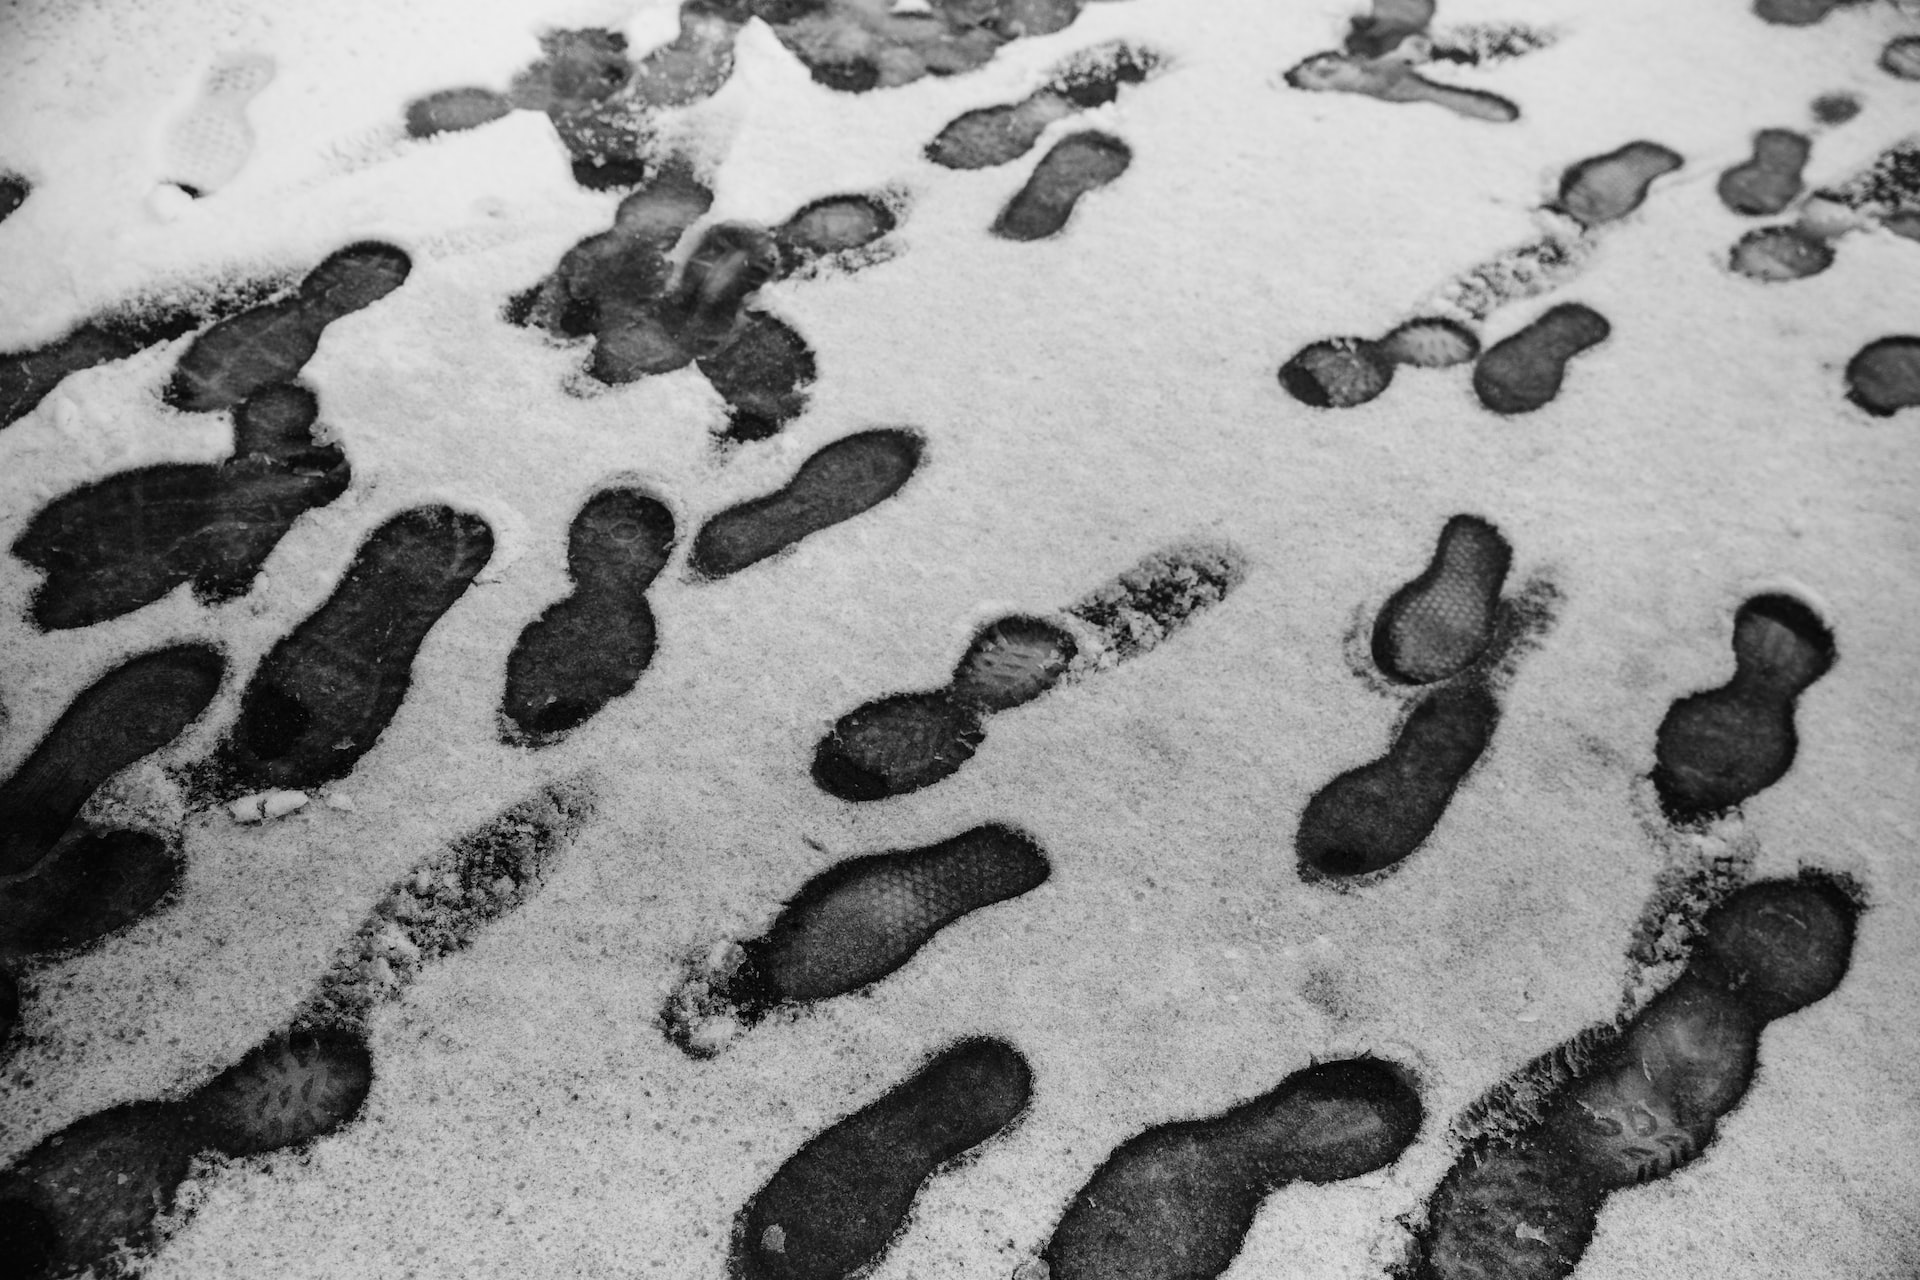 Fussabdrücke im Schnee. (Bild: Jason Leung)